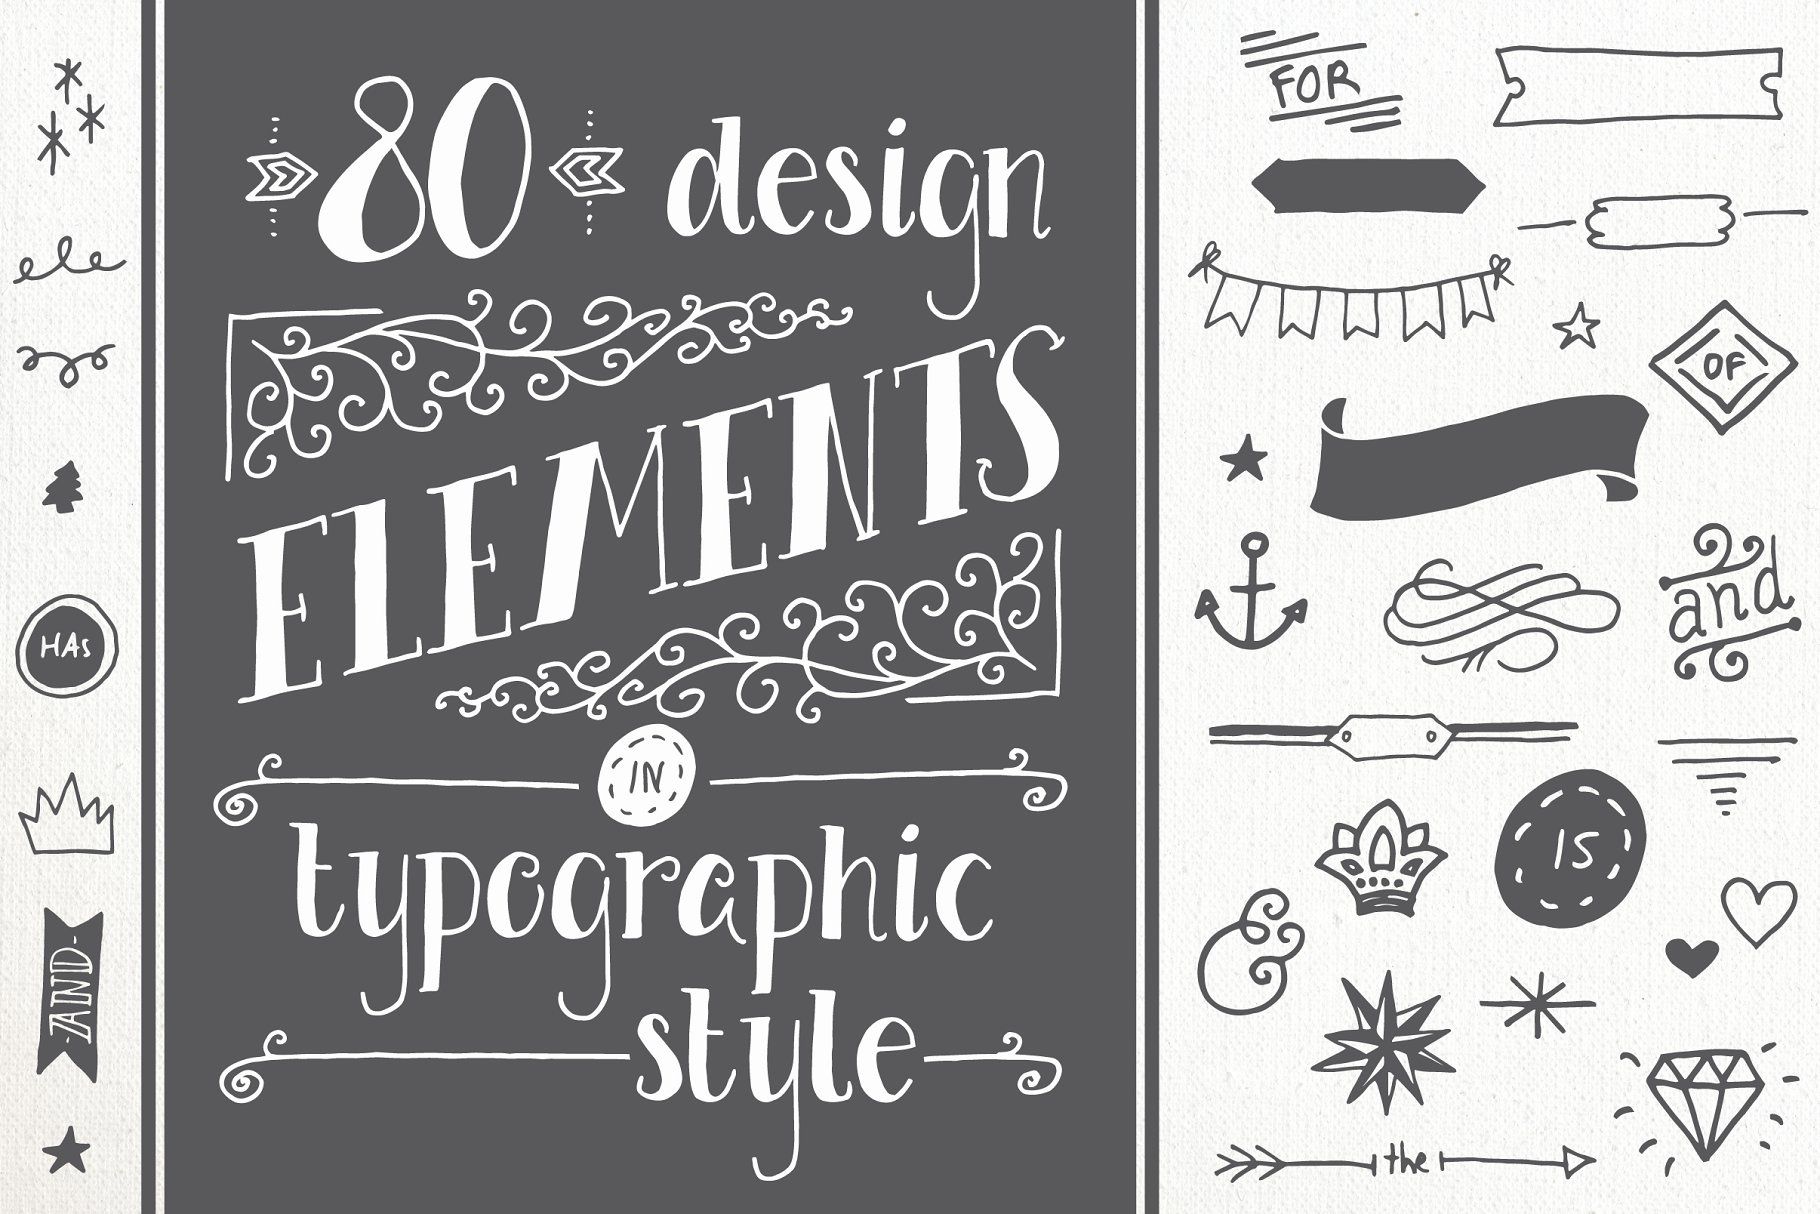 剪贴画、矢量模板&笔刷排版素材 80 Typography Elements插图